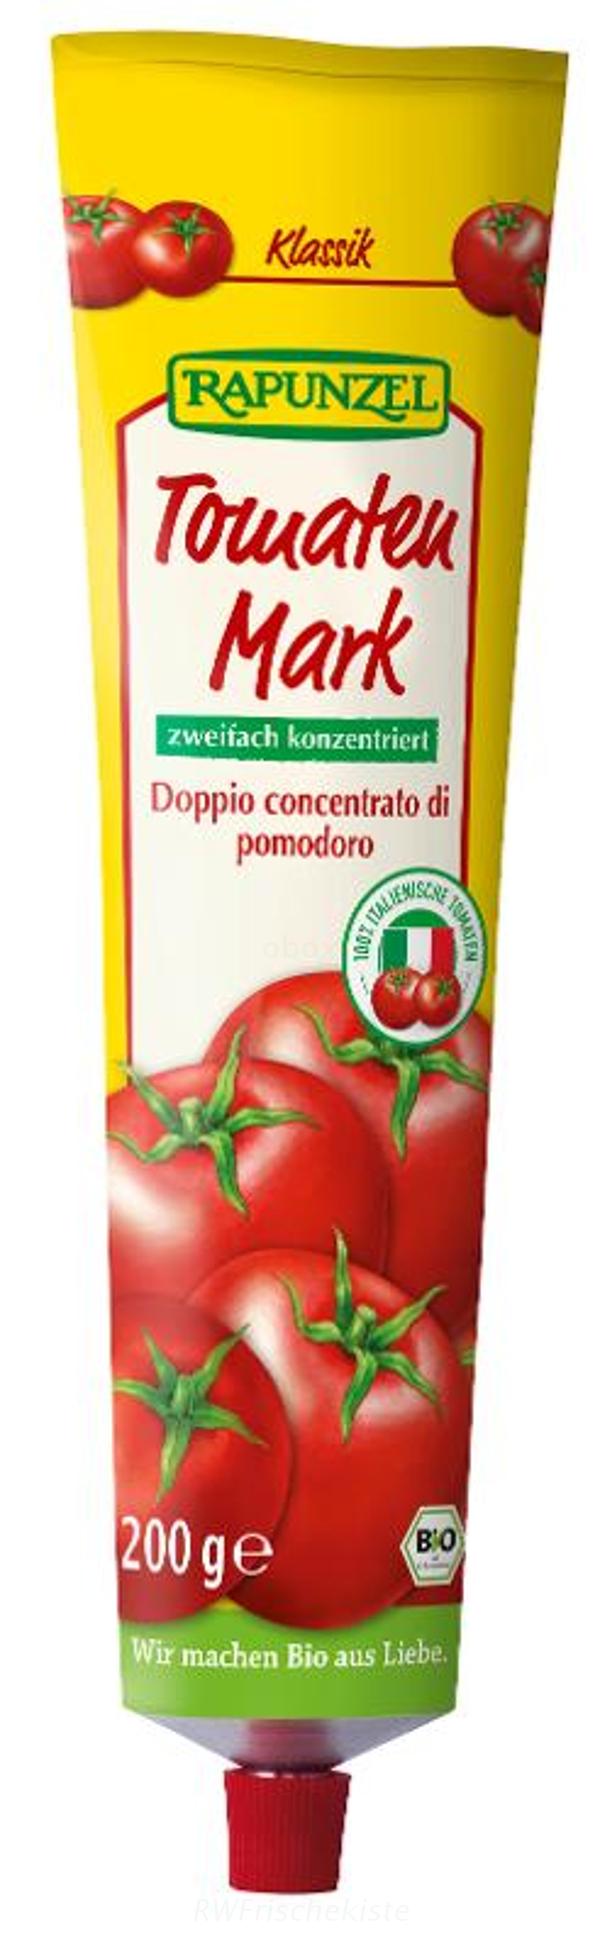 Produktfoto zu Tomatenmark zweif. konzentrier